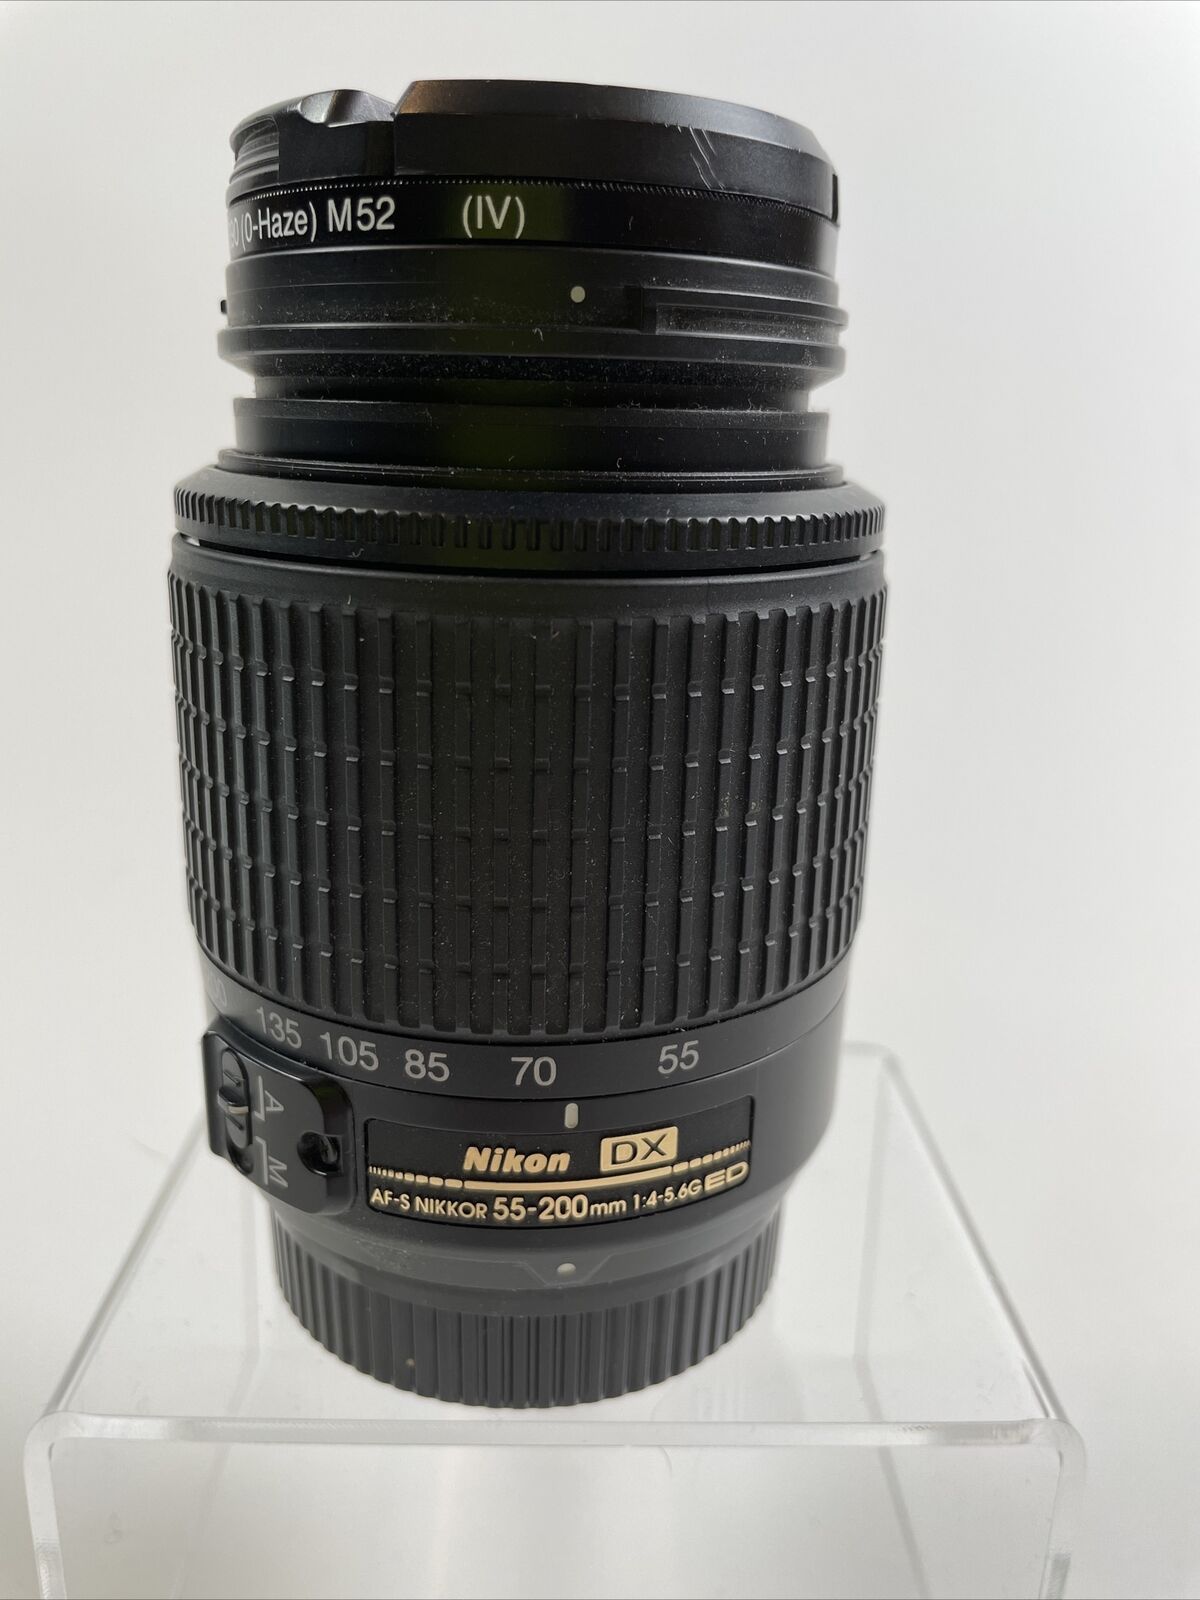 Nikon DX SWM ED AF-S Zoom-NIKKOR 55-200mm f/4-5.6G  With Lens Caps